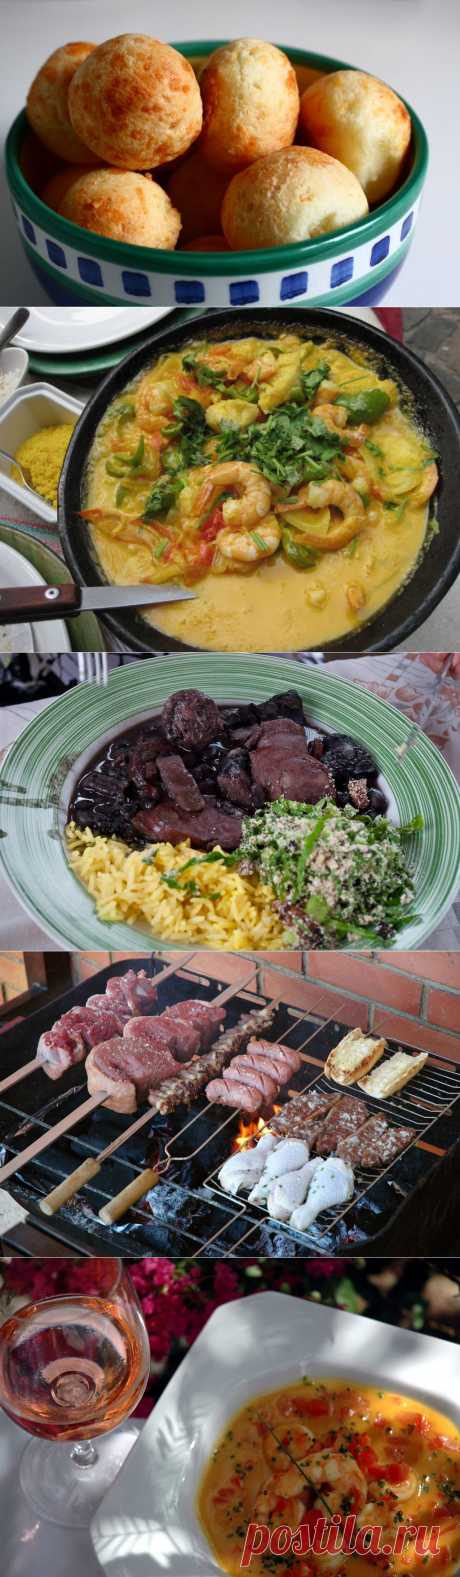 Бразильская кухня: 10 аппетитных национальных блюд.